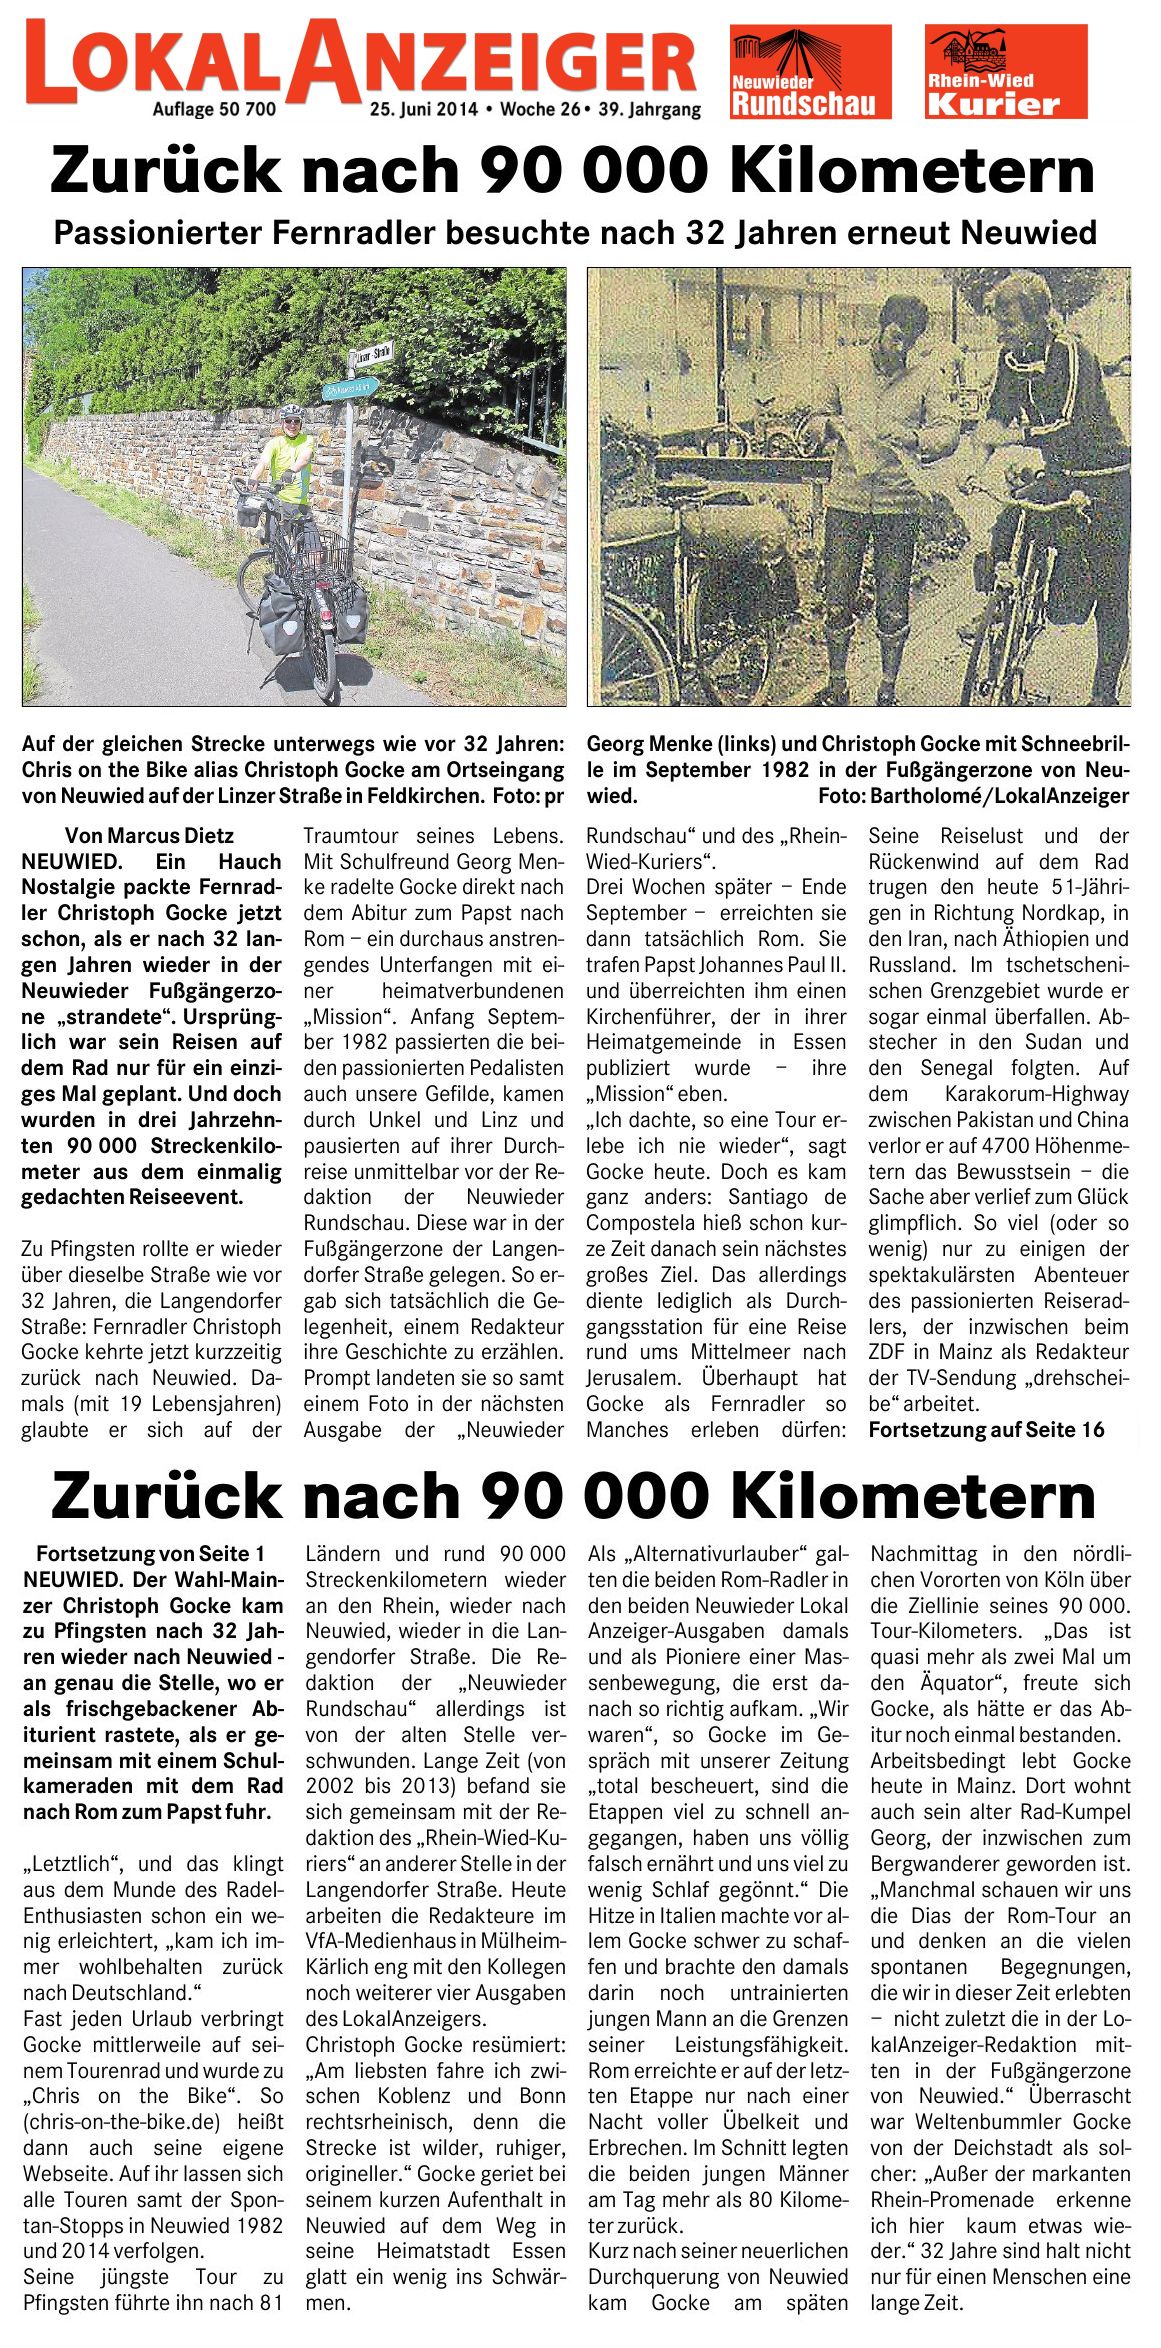 Neuwieder Rundschau und Rhein-Wied-Kurier 25.6.2014: Zurück nach 90.000 Kilometern